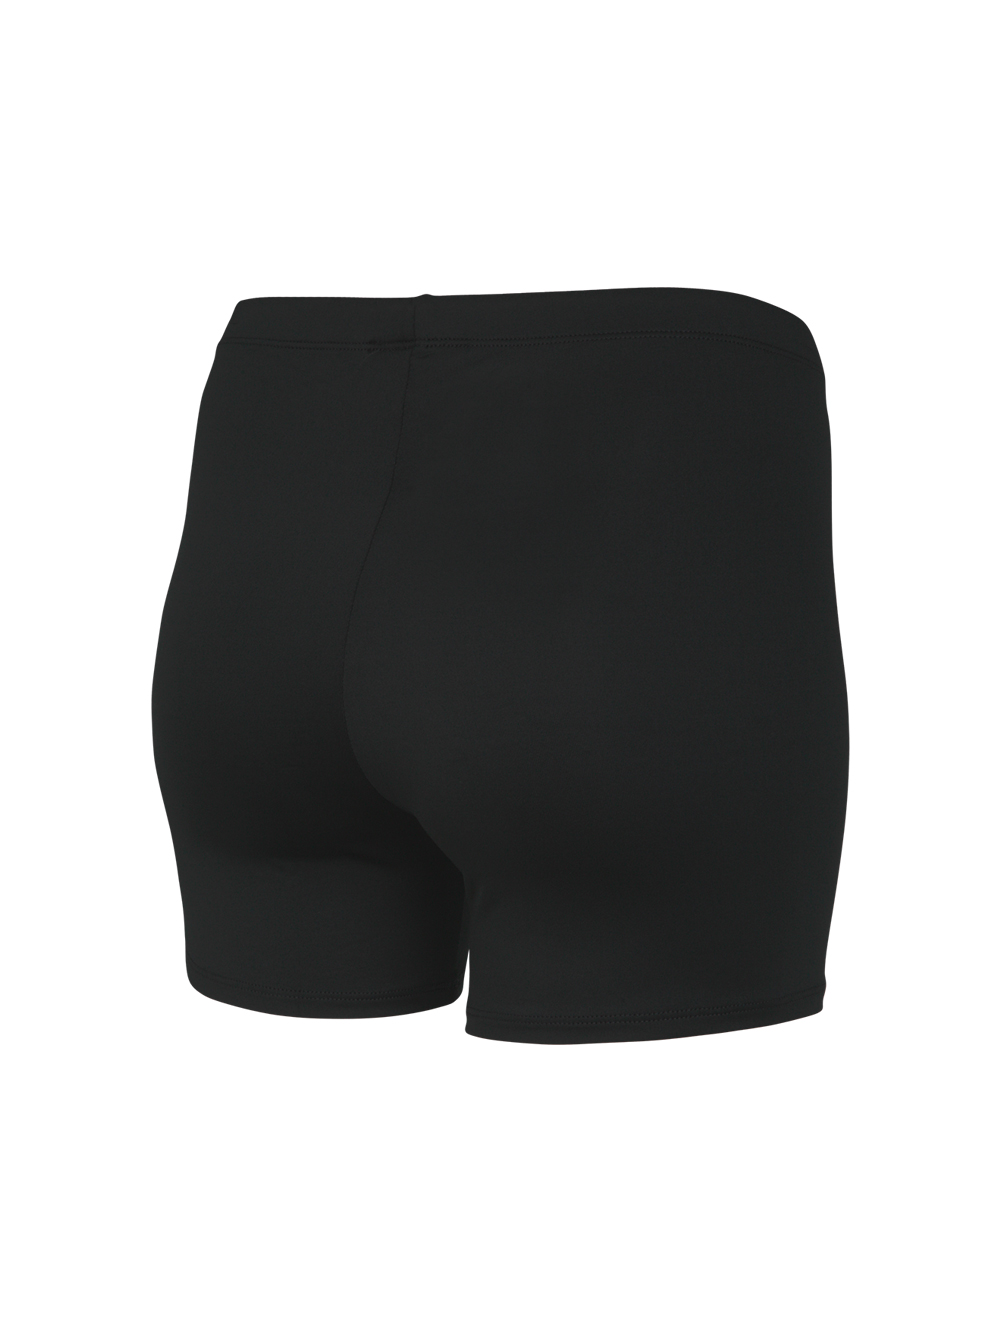 Mizuno Women's 440202 Spandex Vortex Shorts - 4 Inseam 